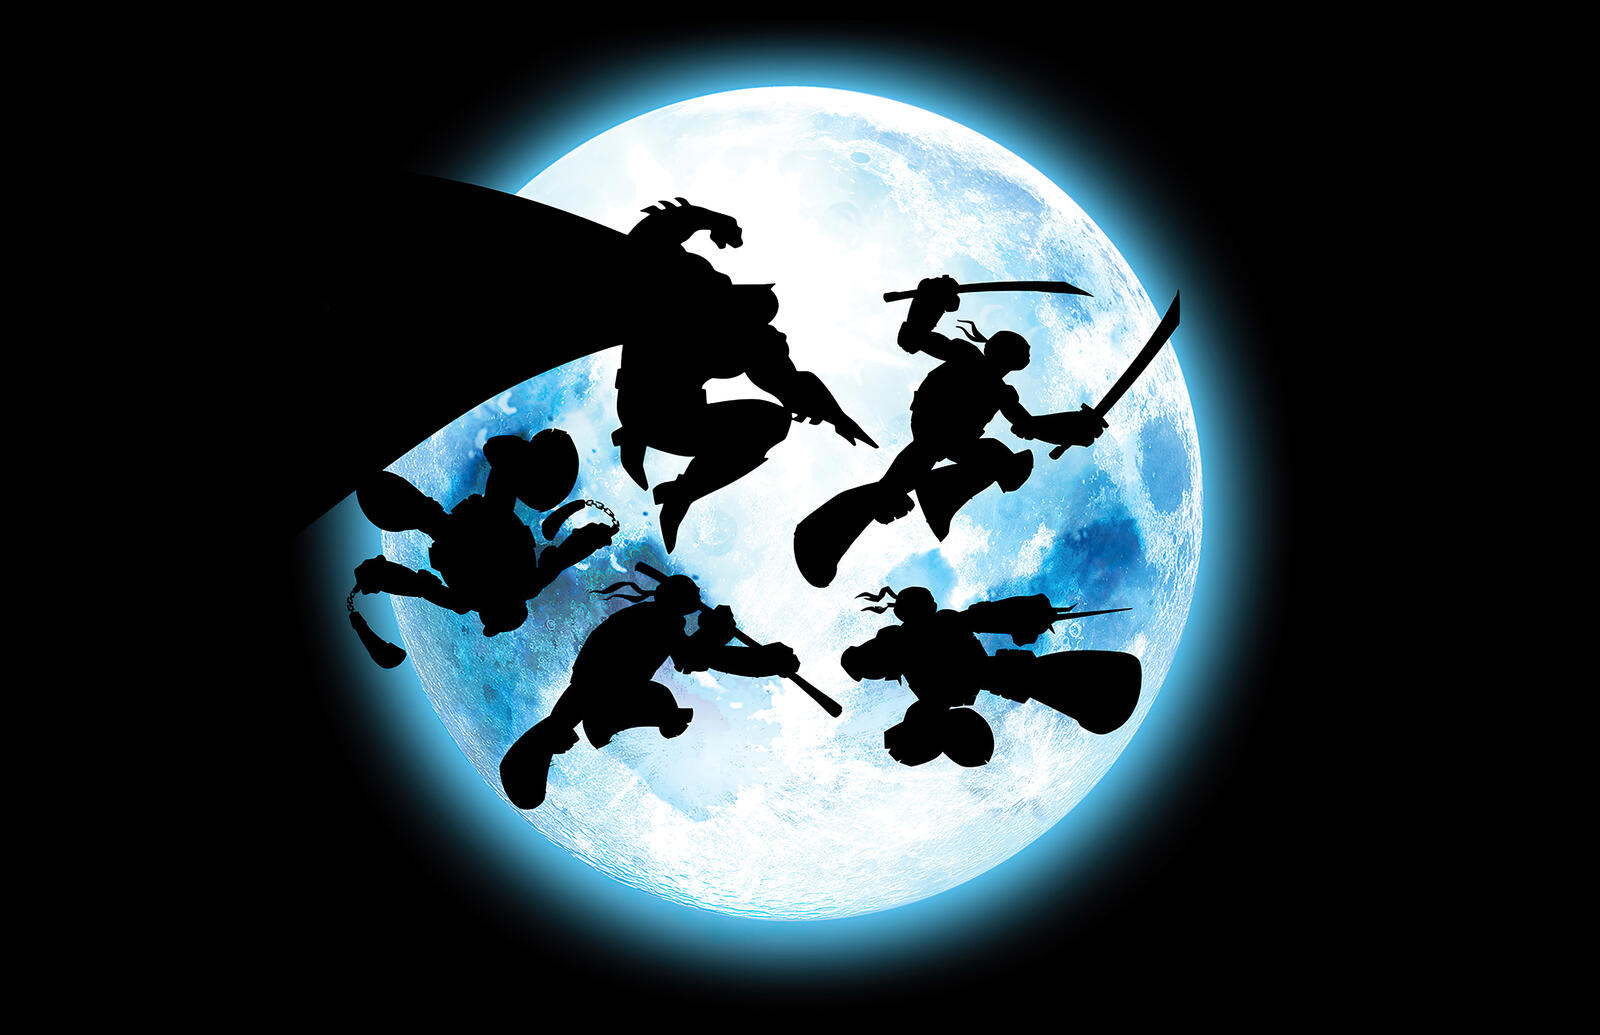 Free photo Ninja Turtles silhouette against the moon